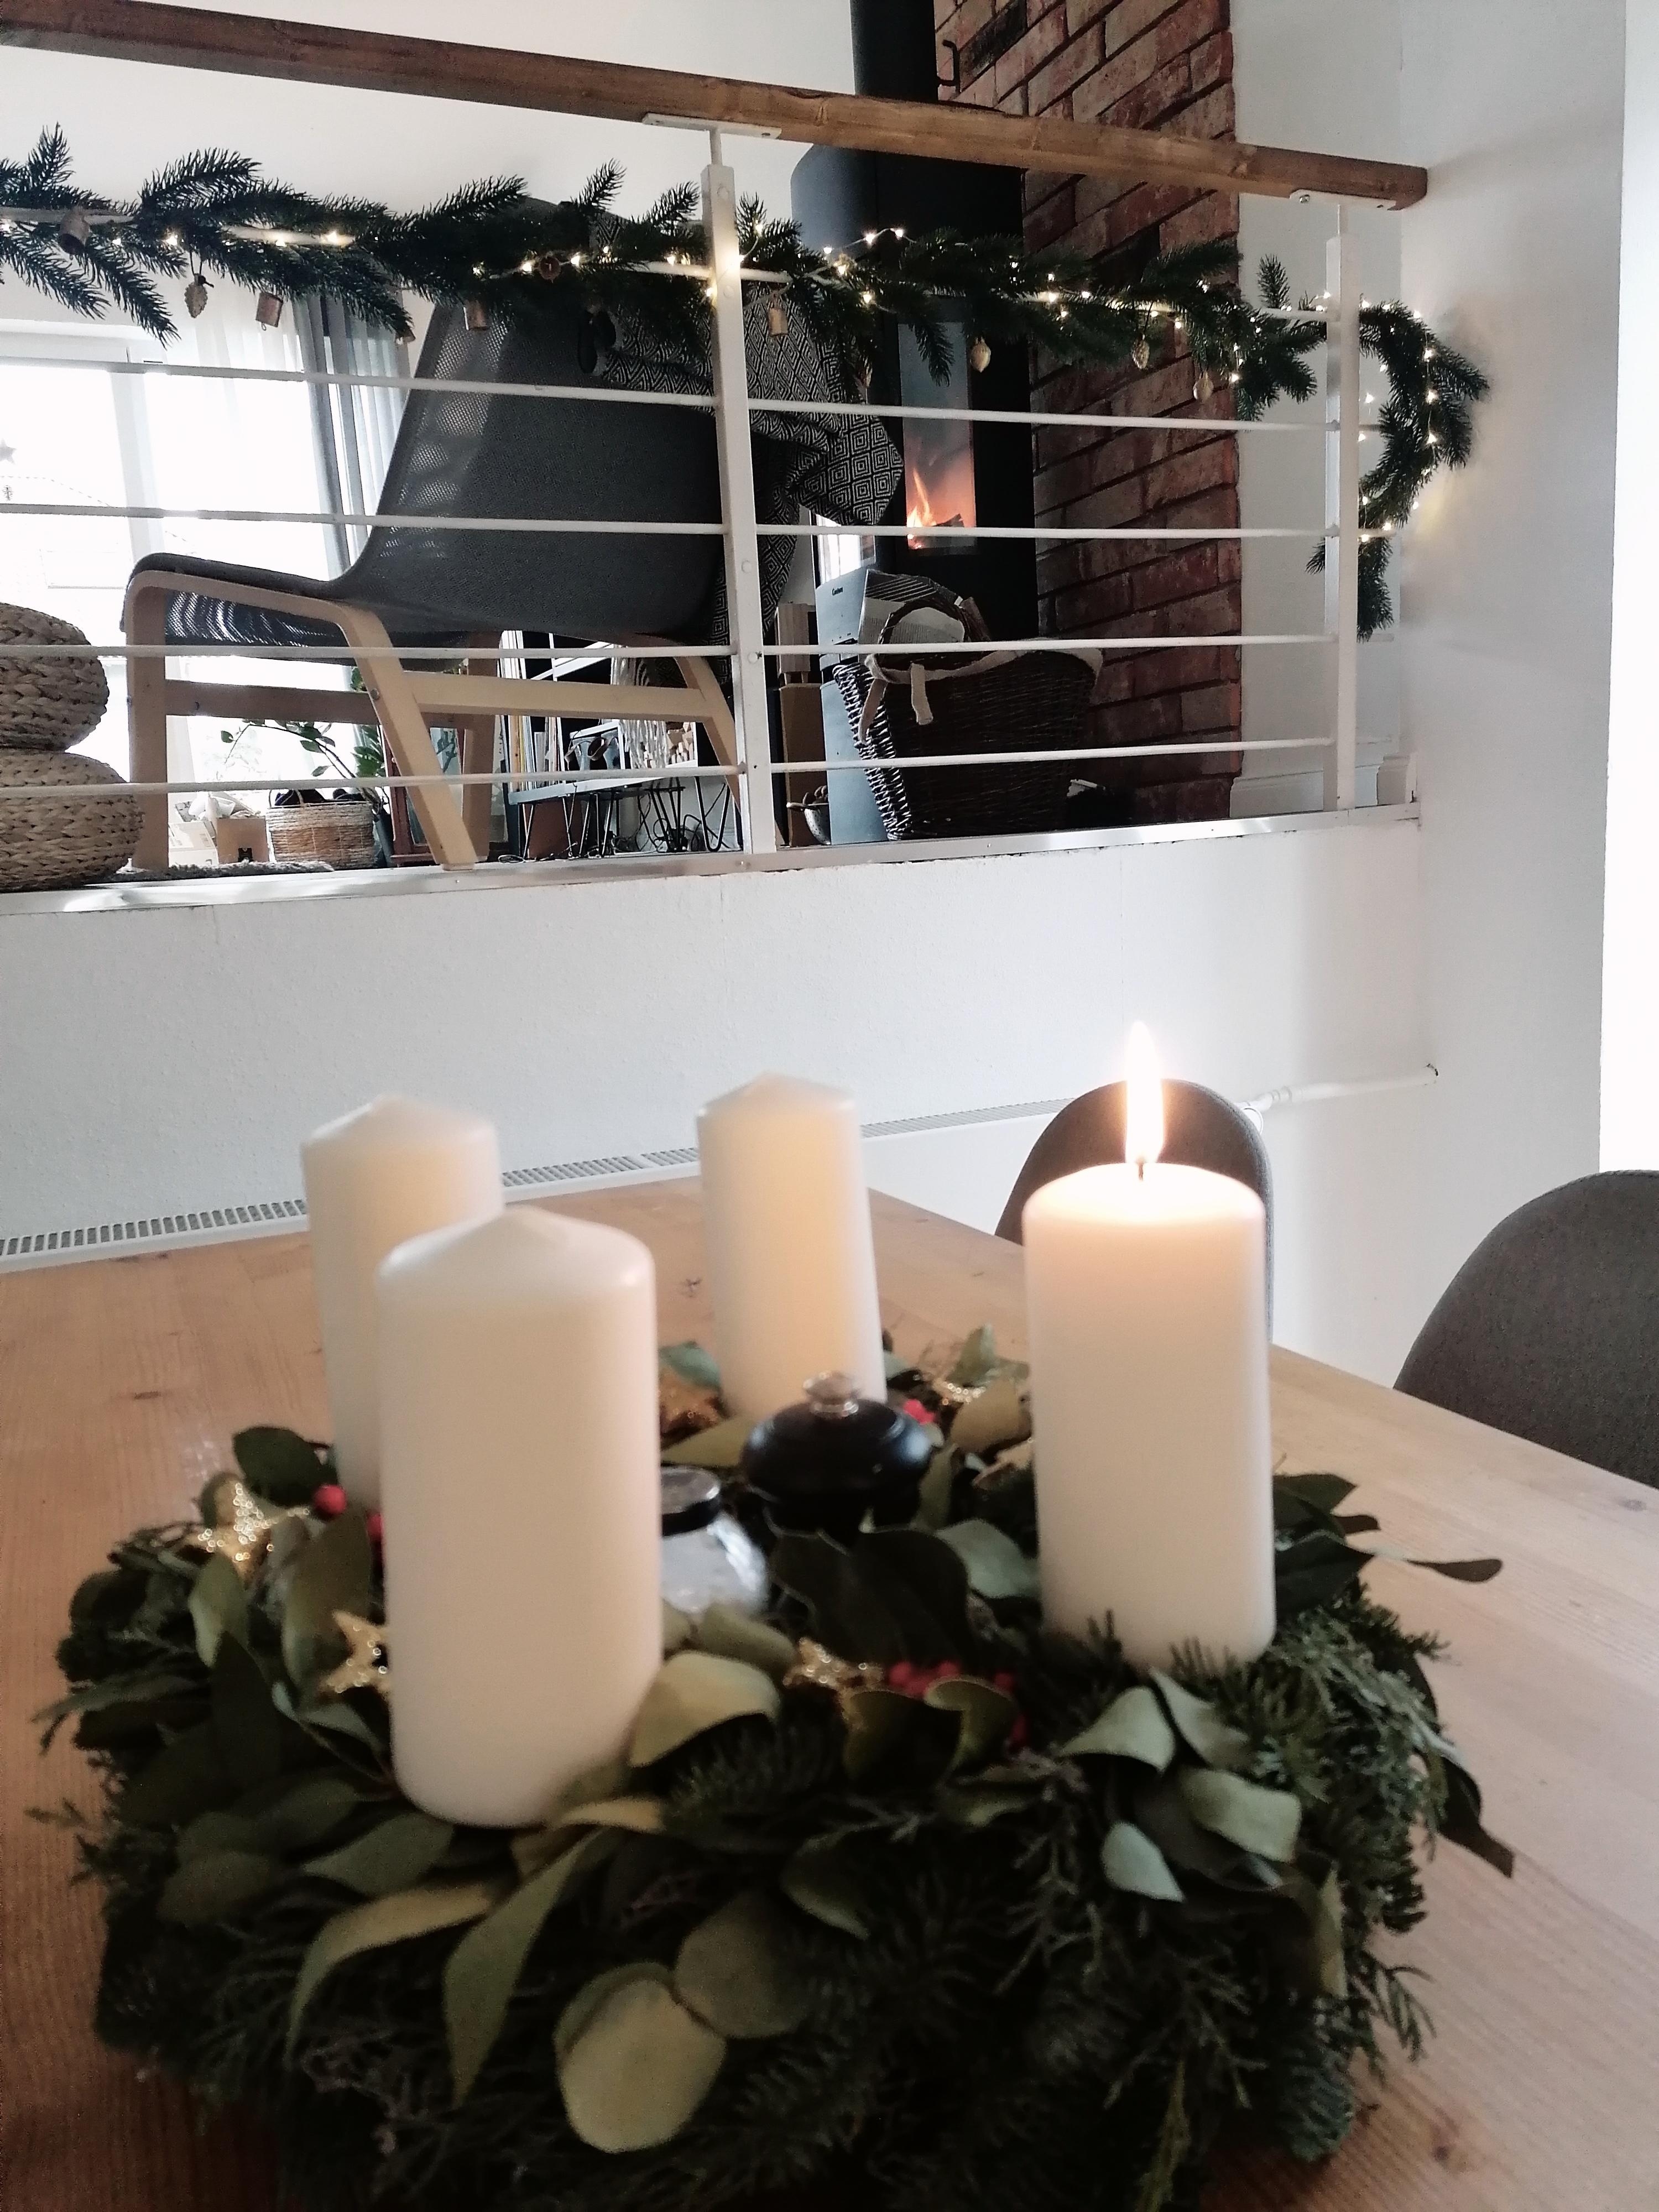 Einen schönen ersten Advent! #Scandikranz #Kamin #Tannengrün #dieerstekerzebrennt